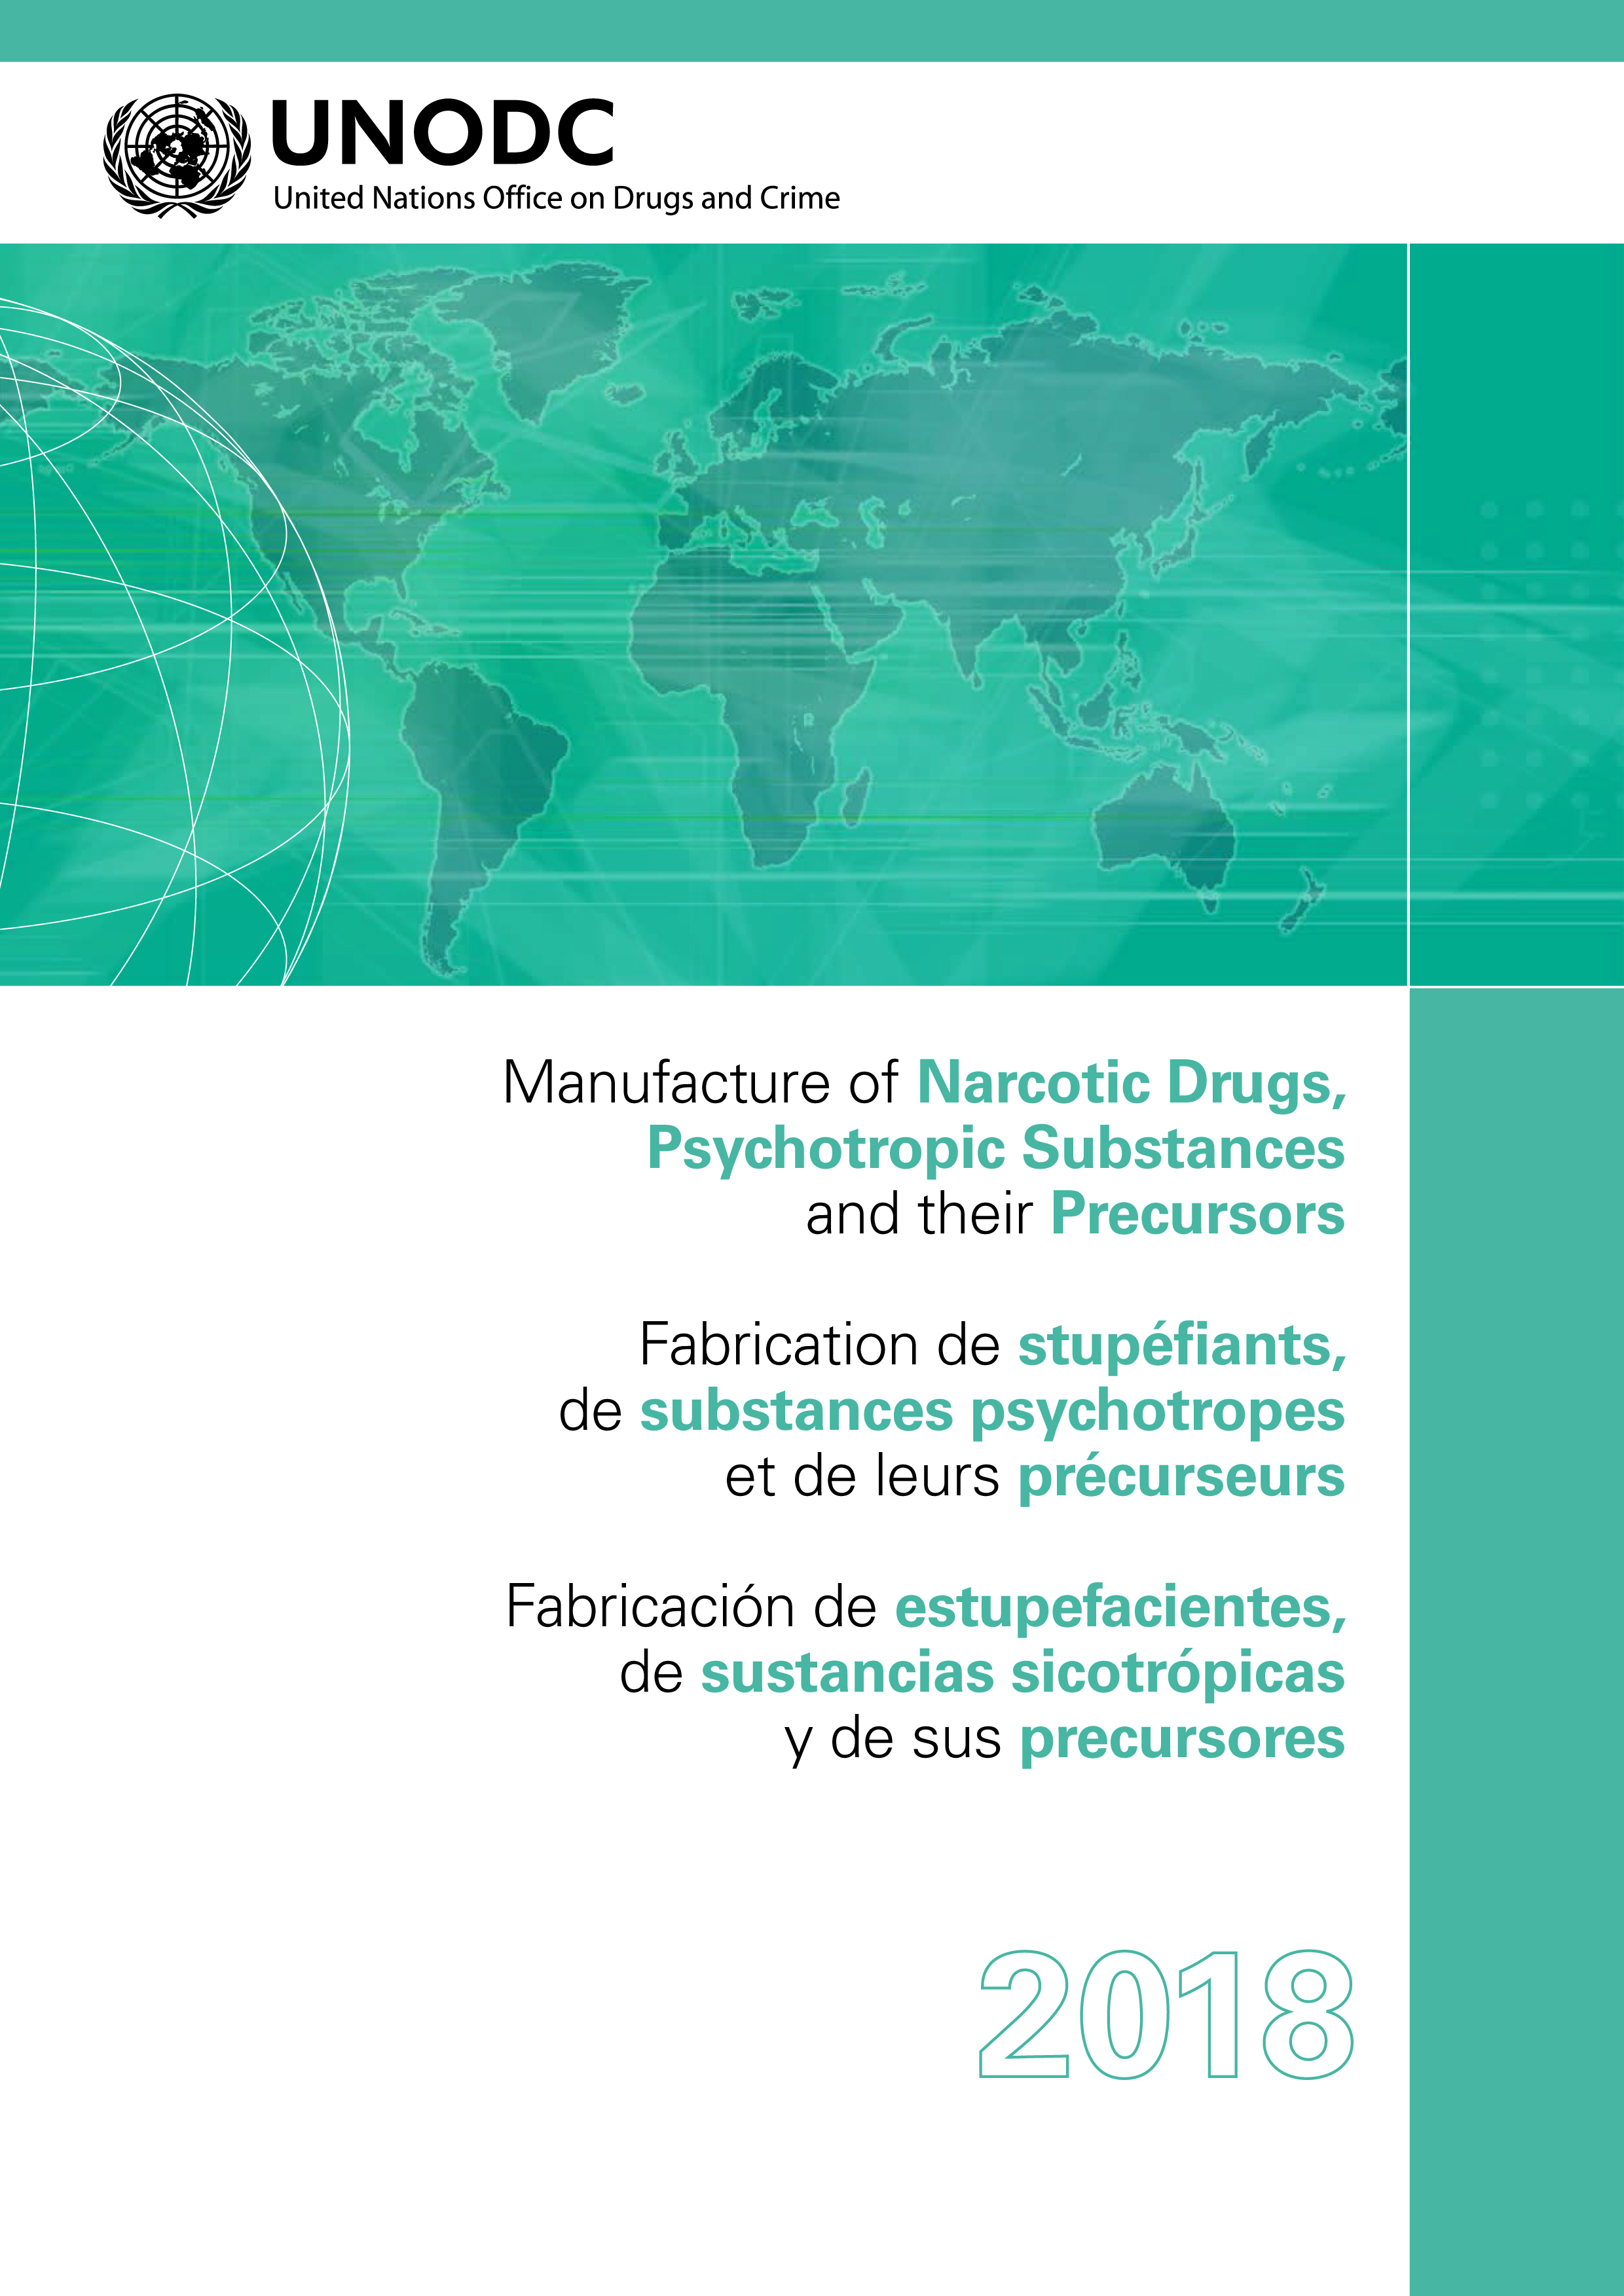 image of Fabricación de estupefacientes, de sustancias sicotrópicas y de sus precursores 2018